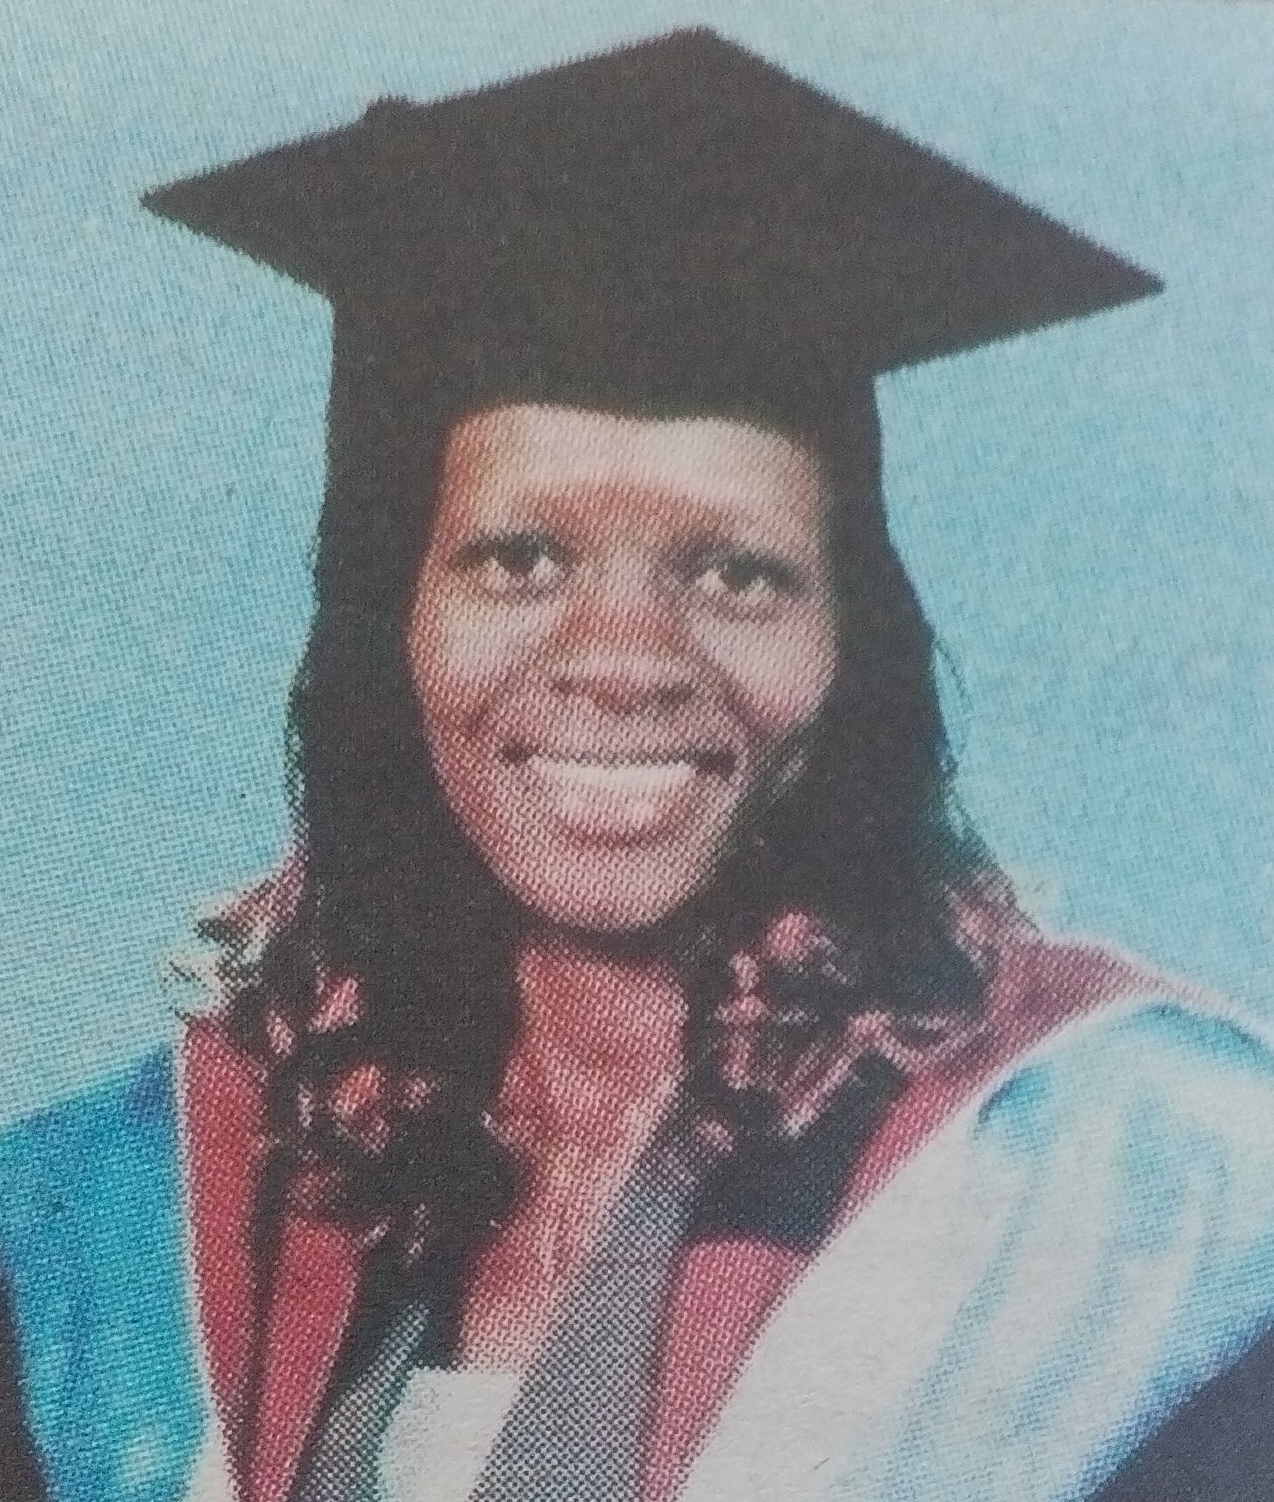 Obituary Image of Eunice Randiki Onyuka